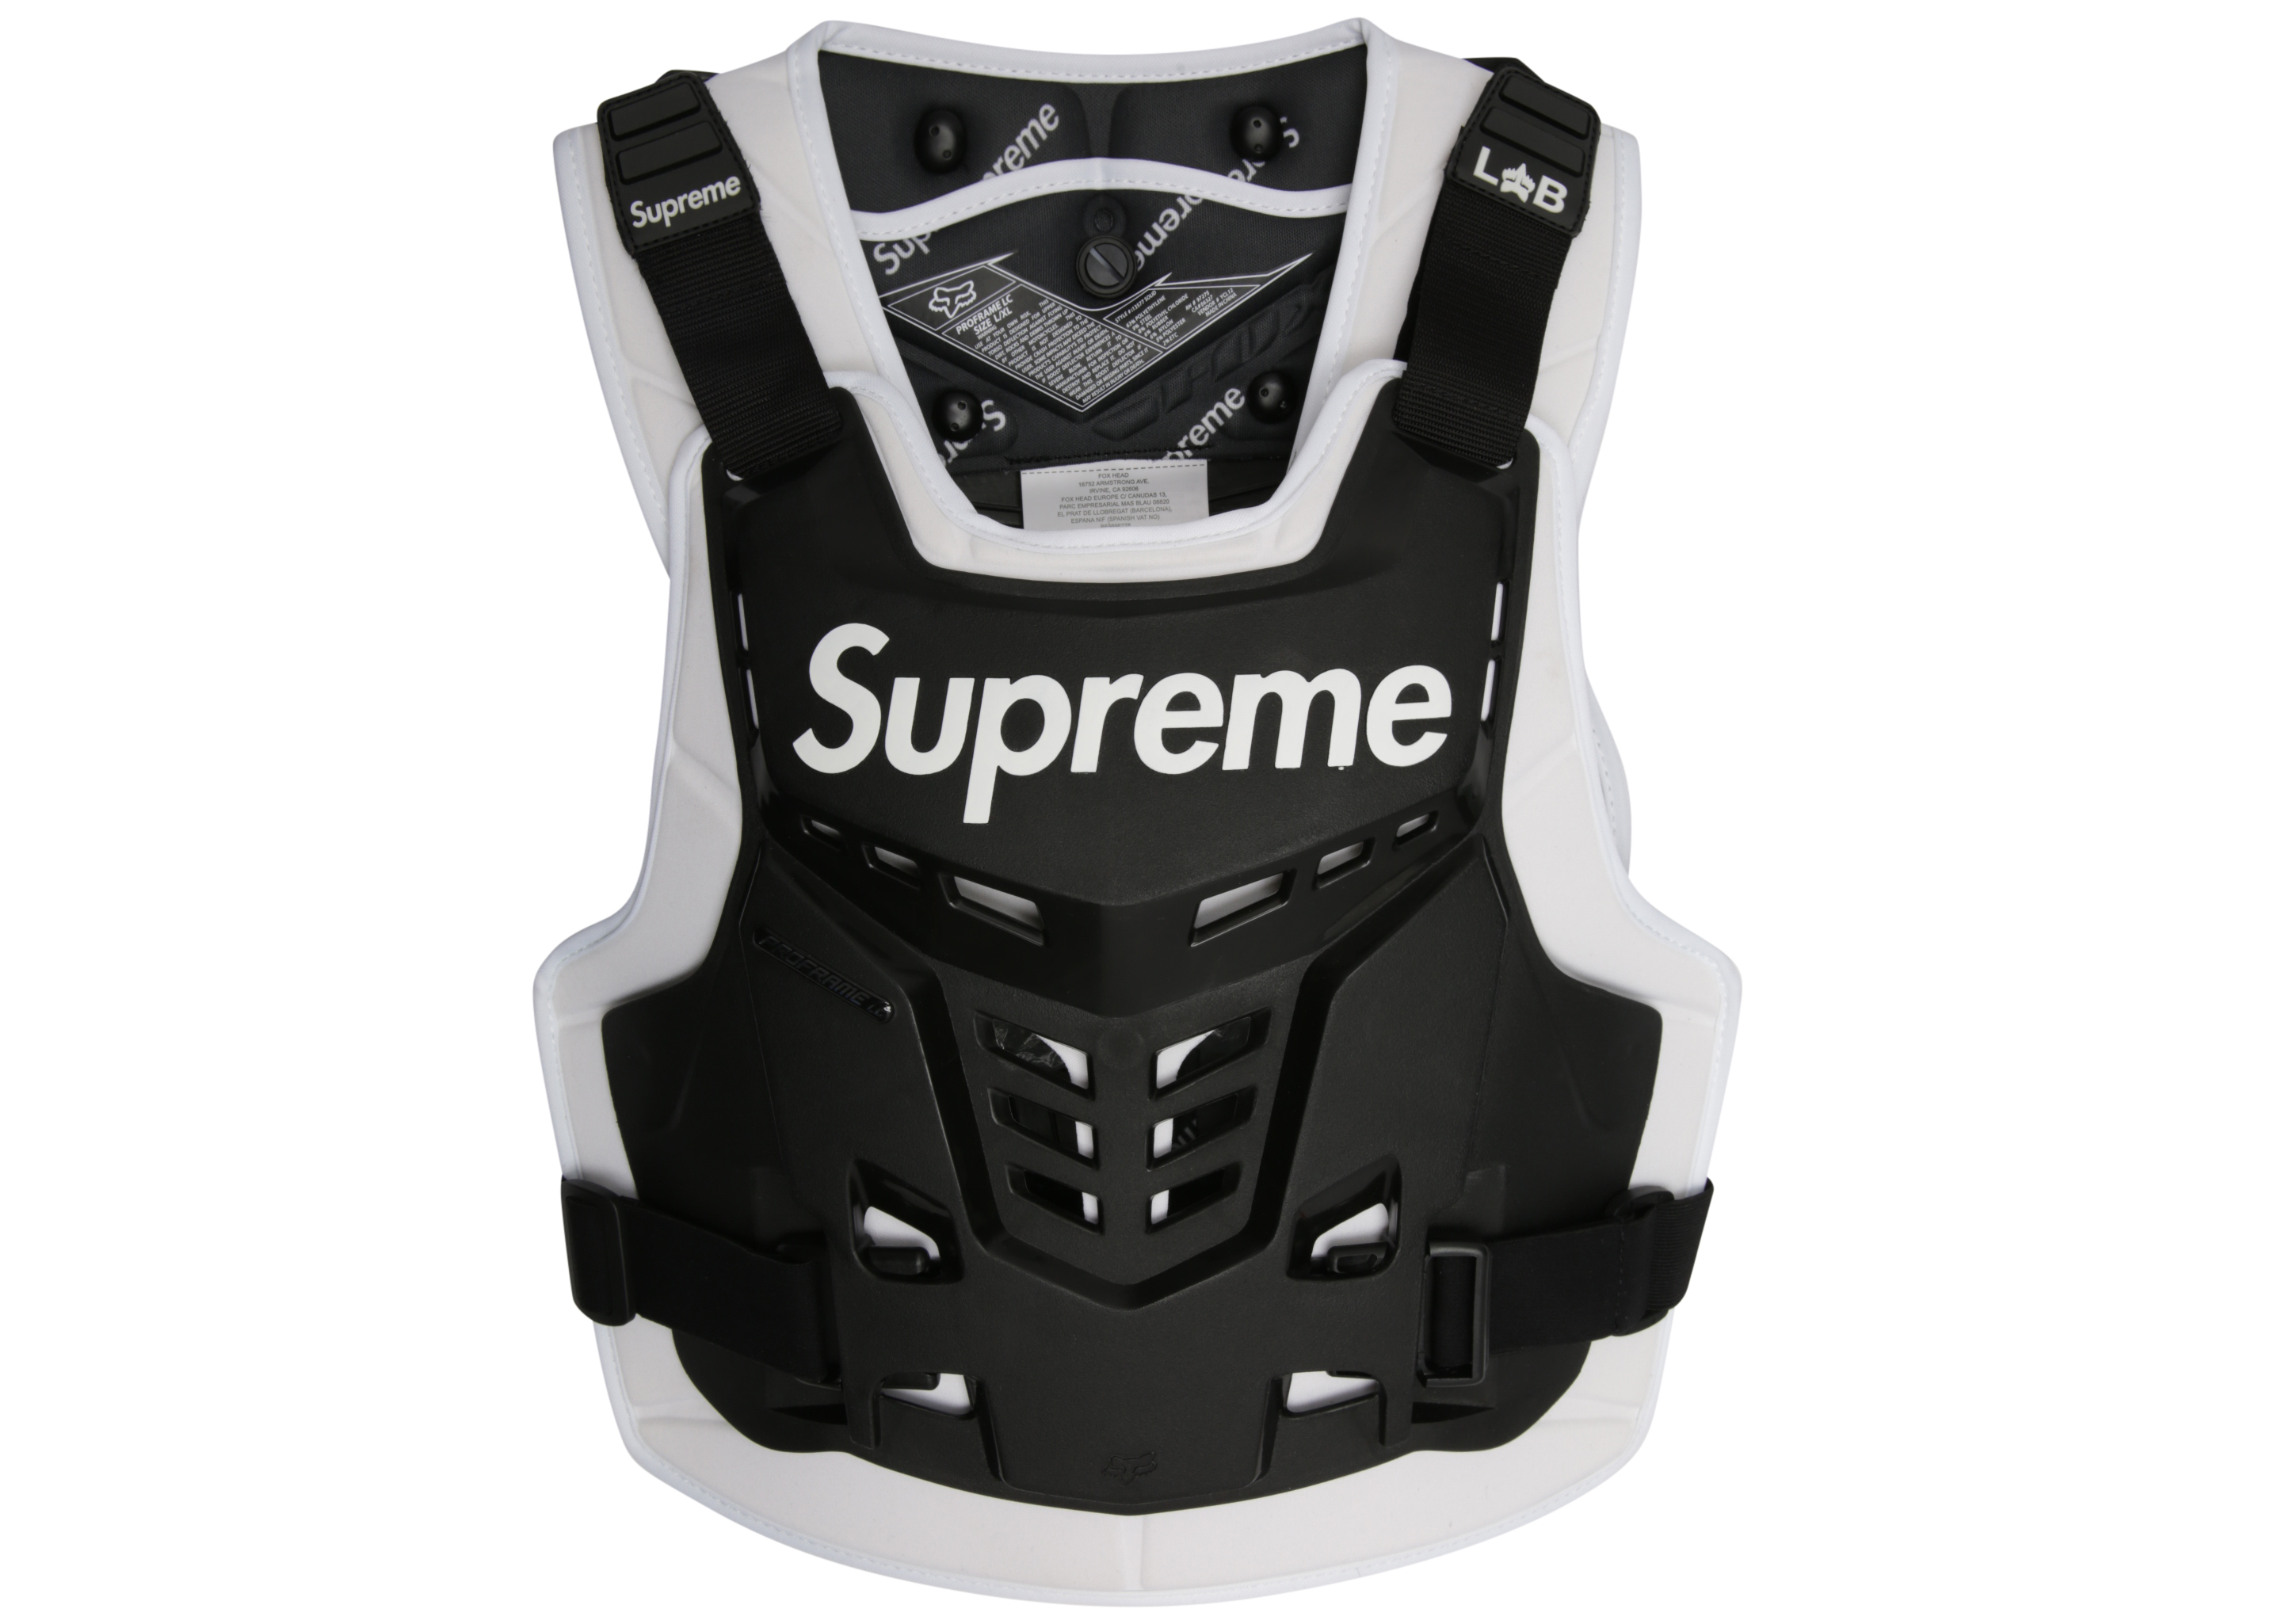 supreme fox Racing
Roost Deflector Vest